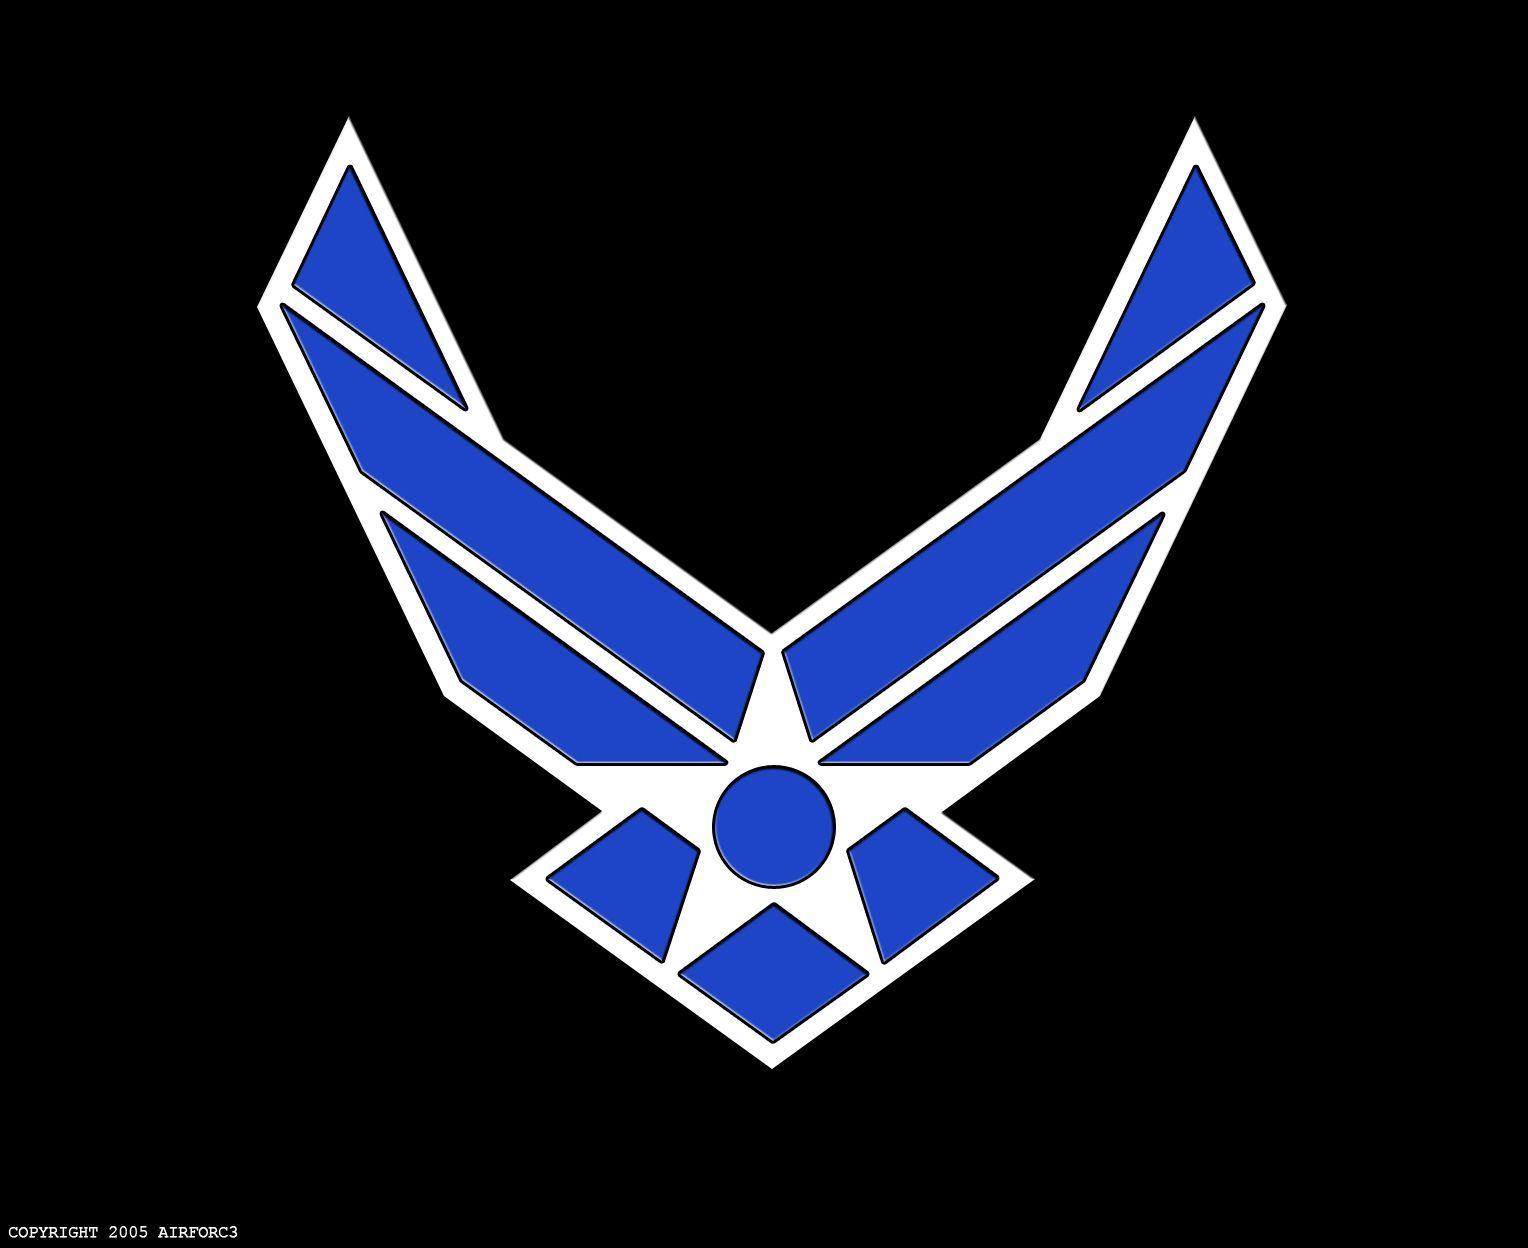 50 USAF Logo Wallpaper  WallpaperSafari